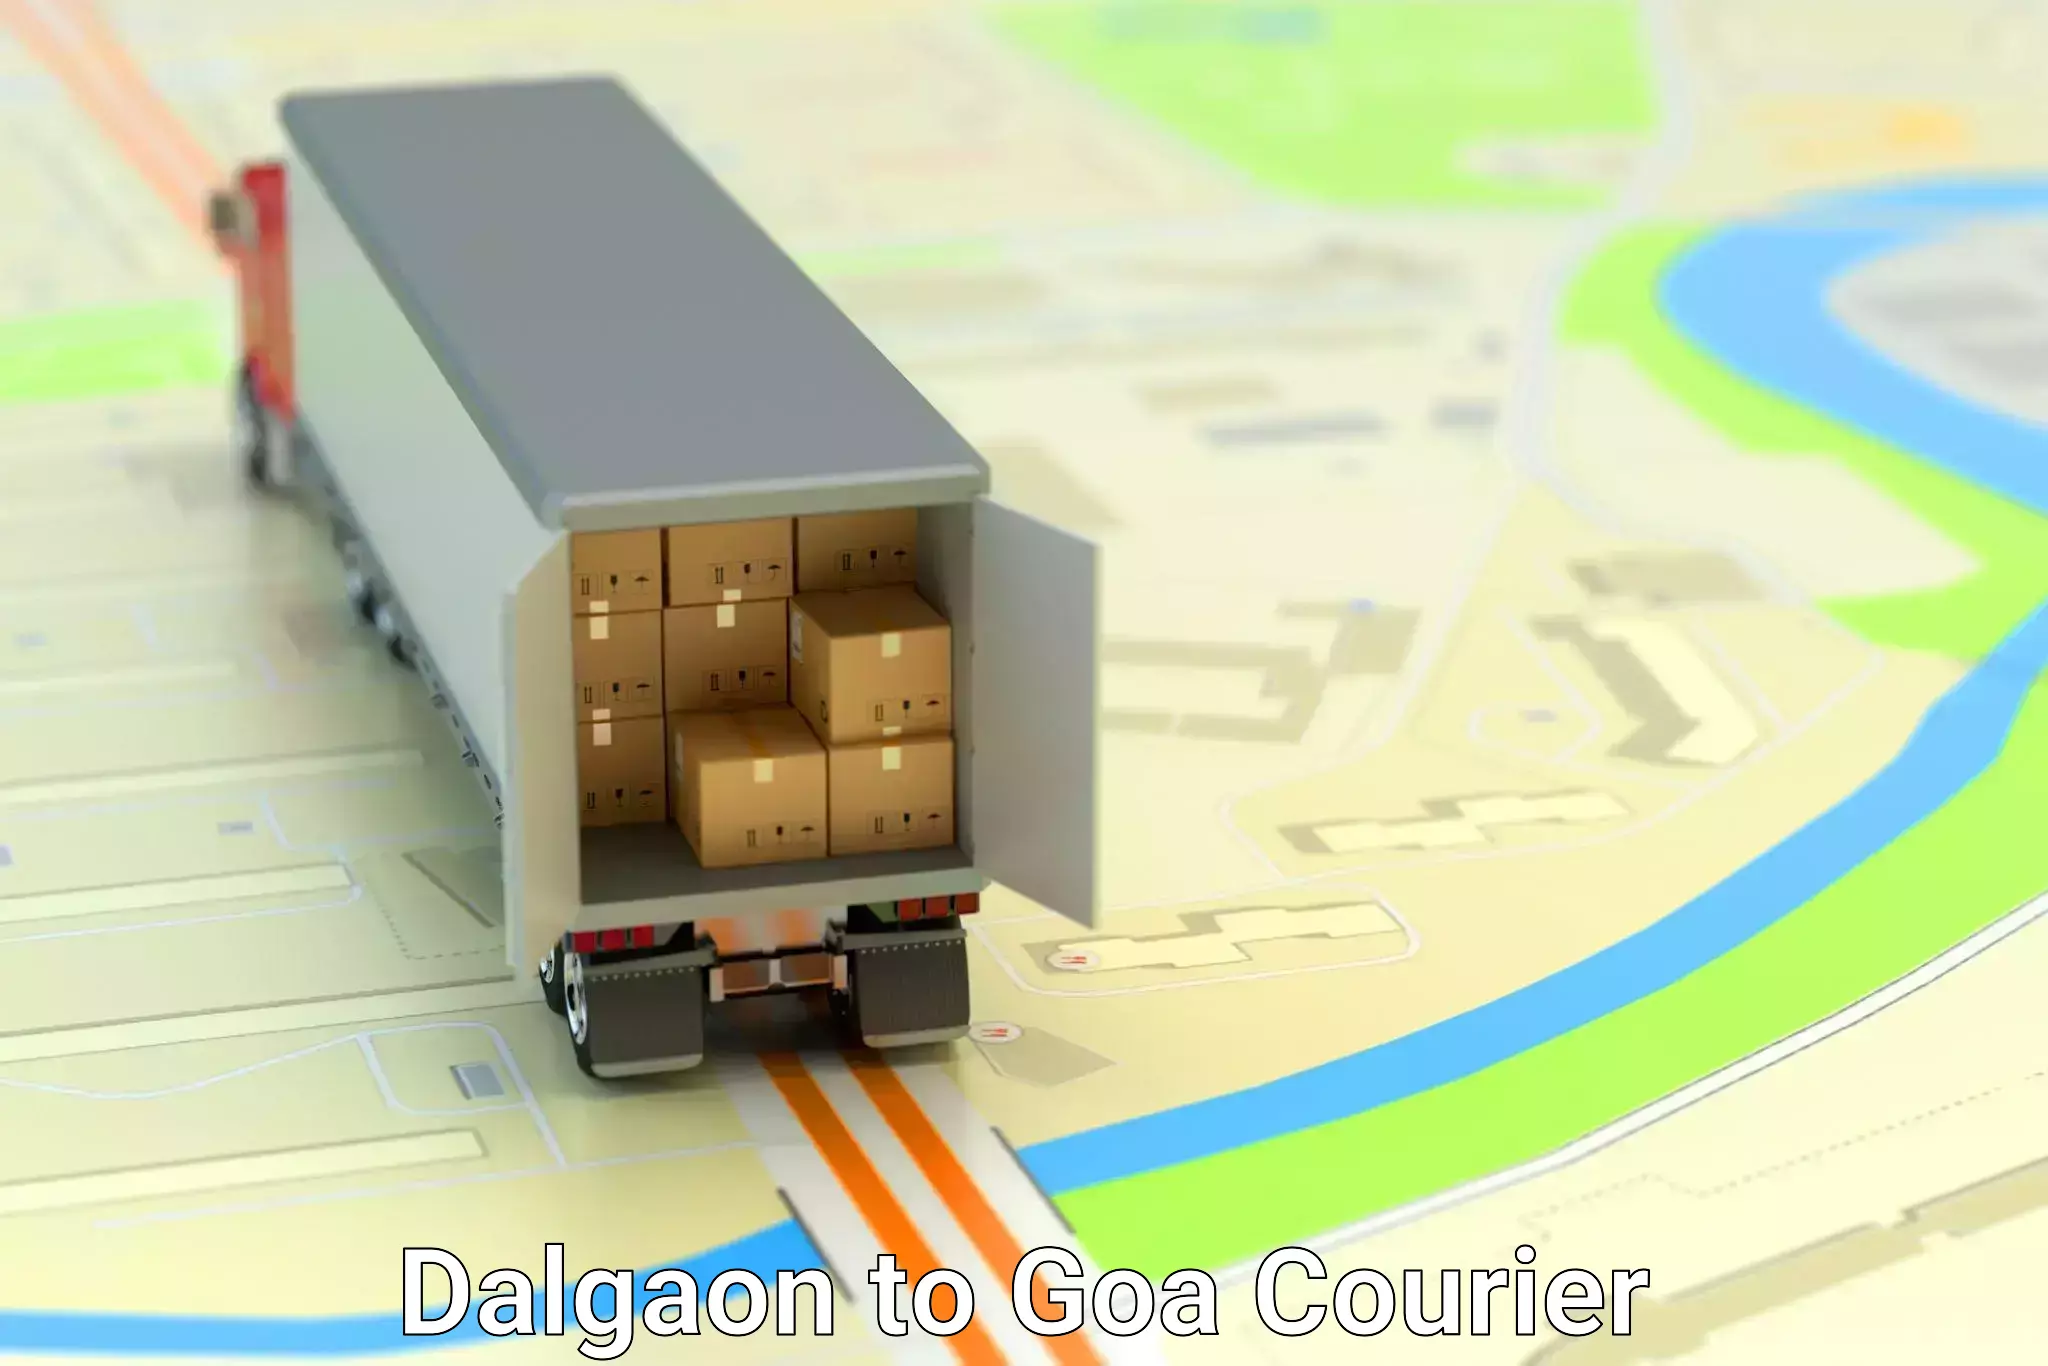 Urban courier service Dalgaon to IIT Goa